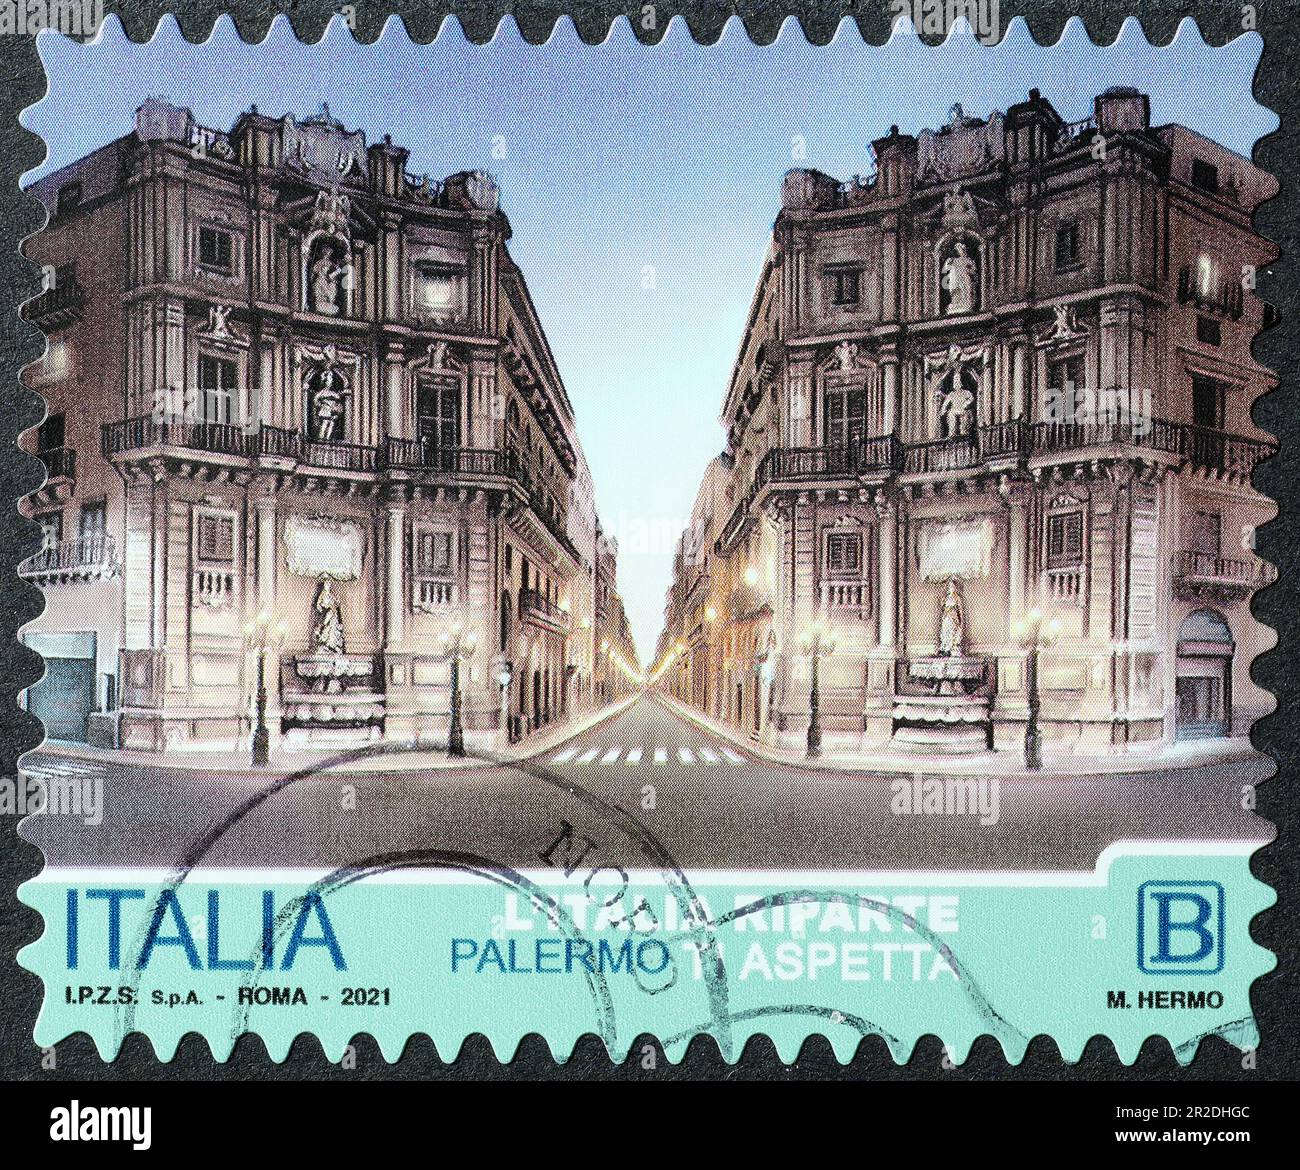 Quattro angoli a Palermo sul francobollo italiano Foto Stock